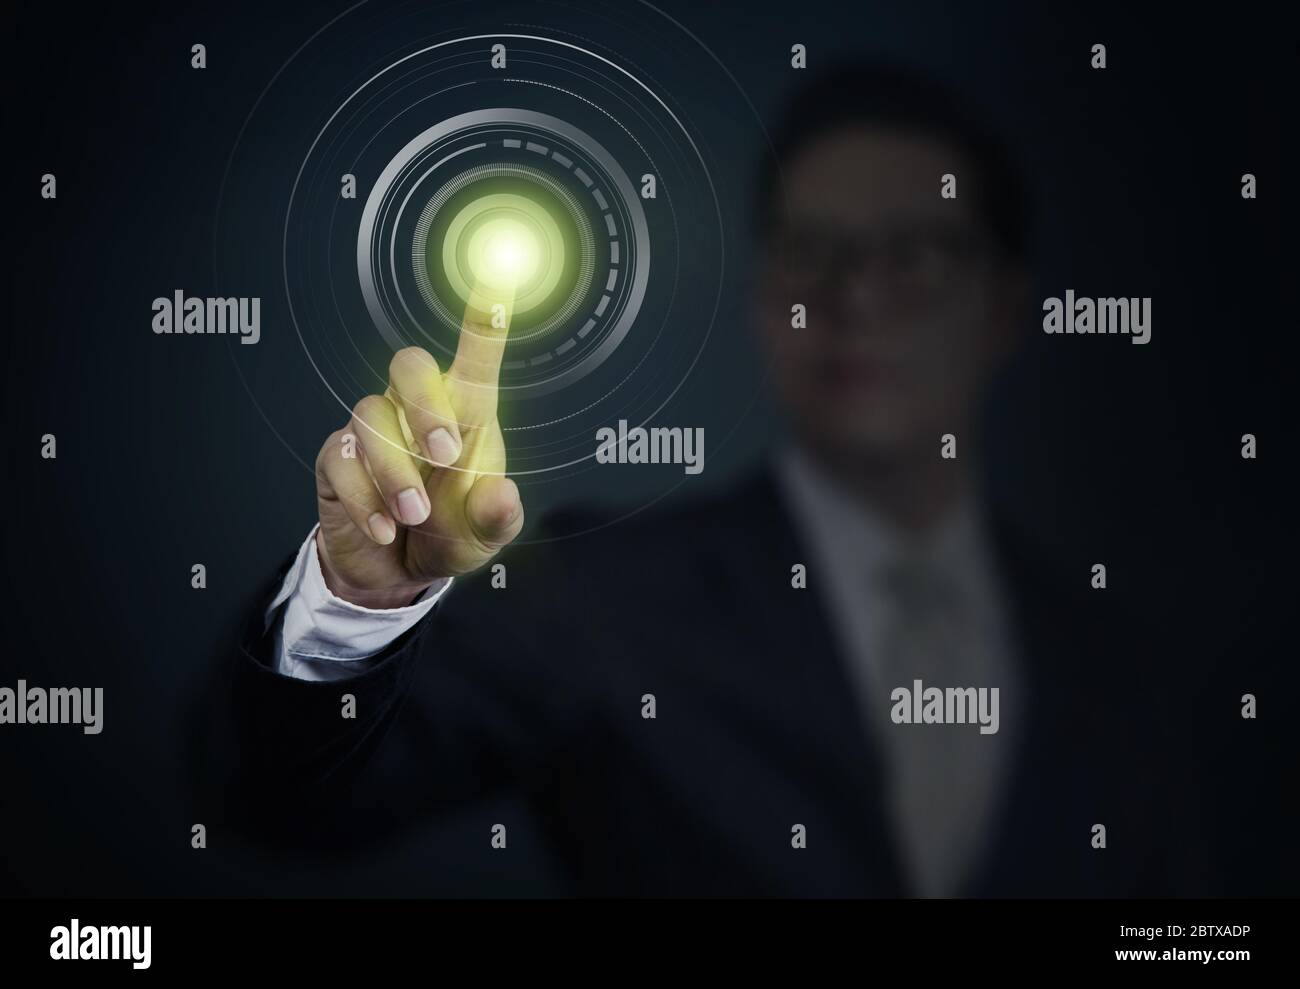 Homme d'affaires appuyant sur un bouton d'alimentation sur l'interface de l'écran tactile. Concept d'affaires, de technologie, d'Internet et de réseautage. Banque D'Images